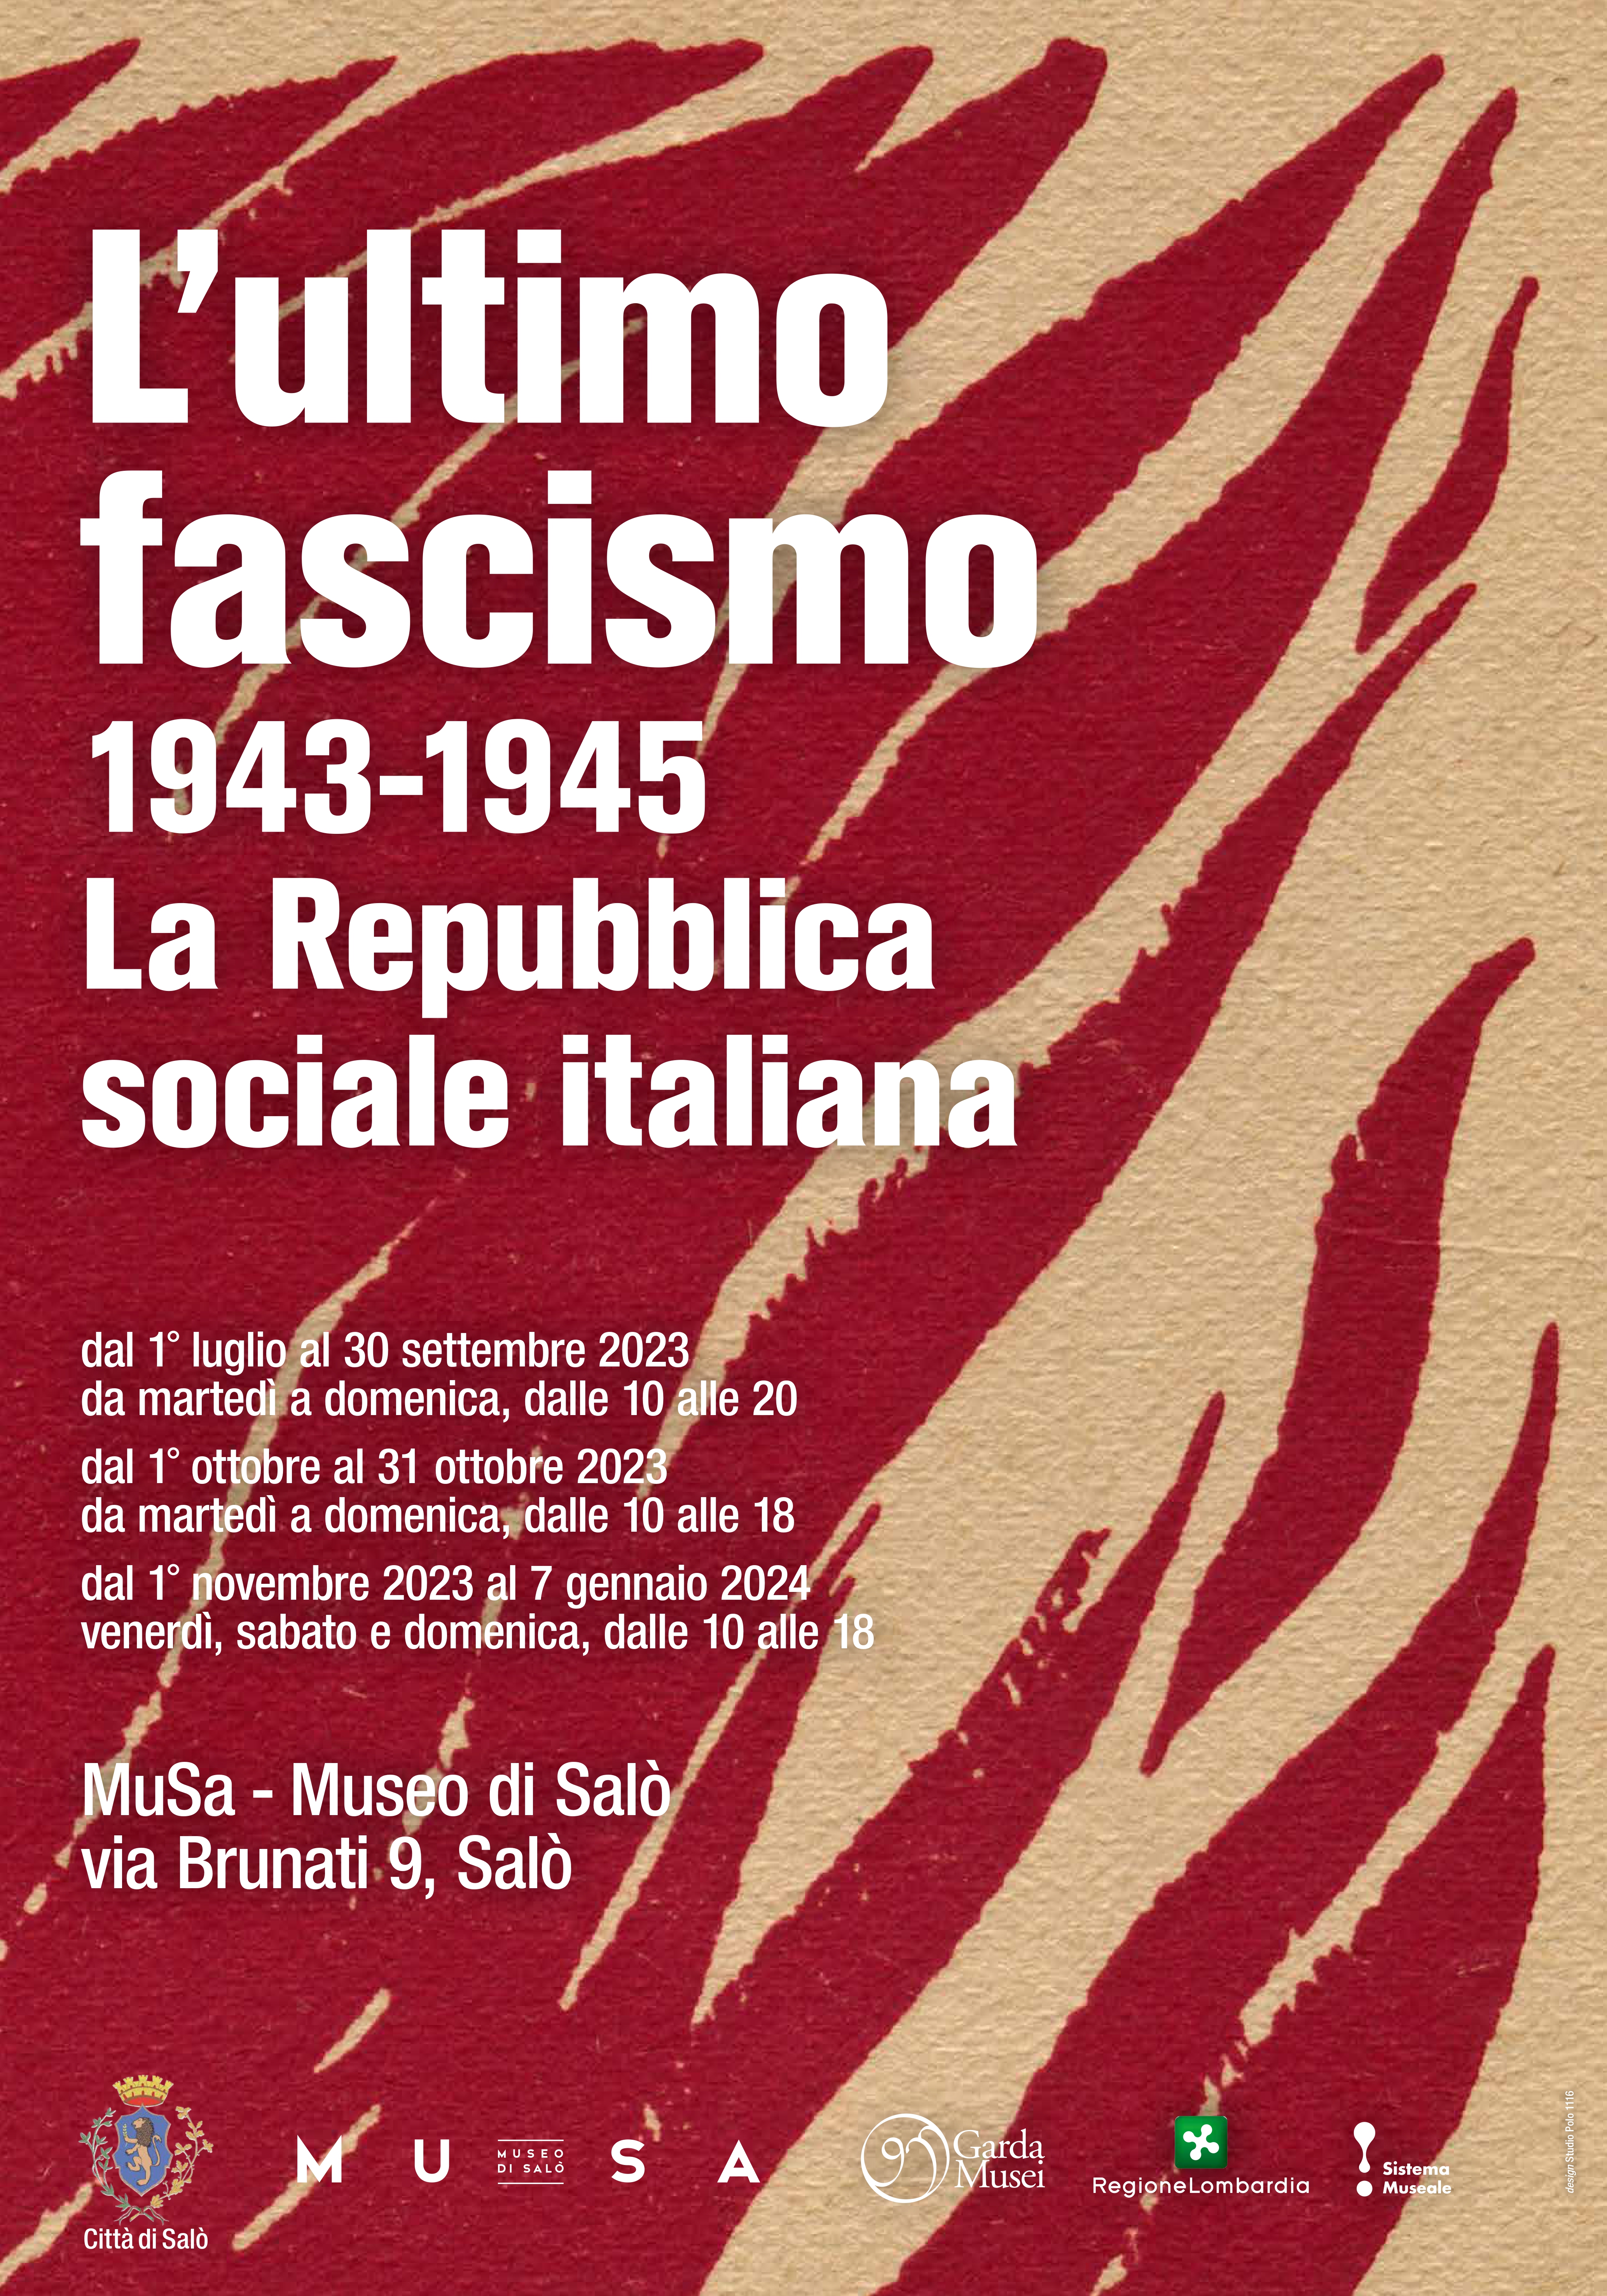 Immagine di copertina per VISITE GUIDATE “L’ultimo fascismo 1943-1945. La Repubblica sociale italiana”